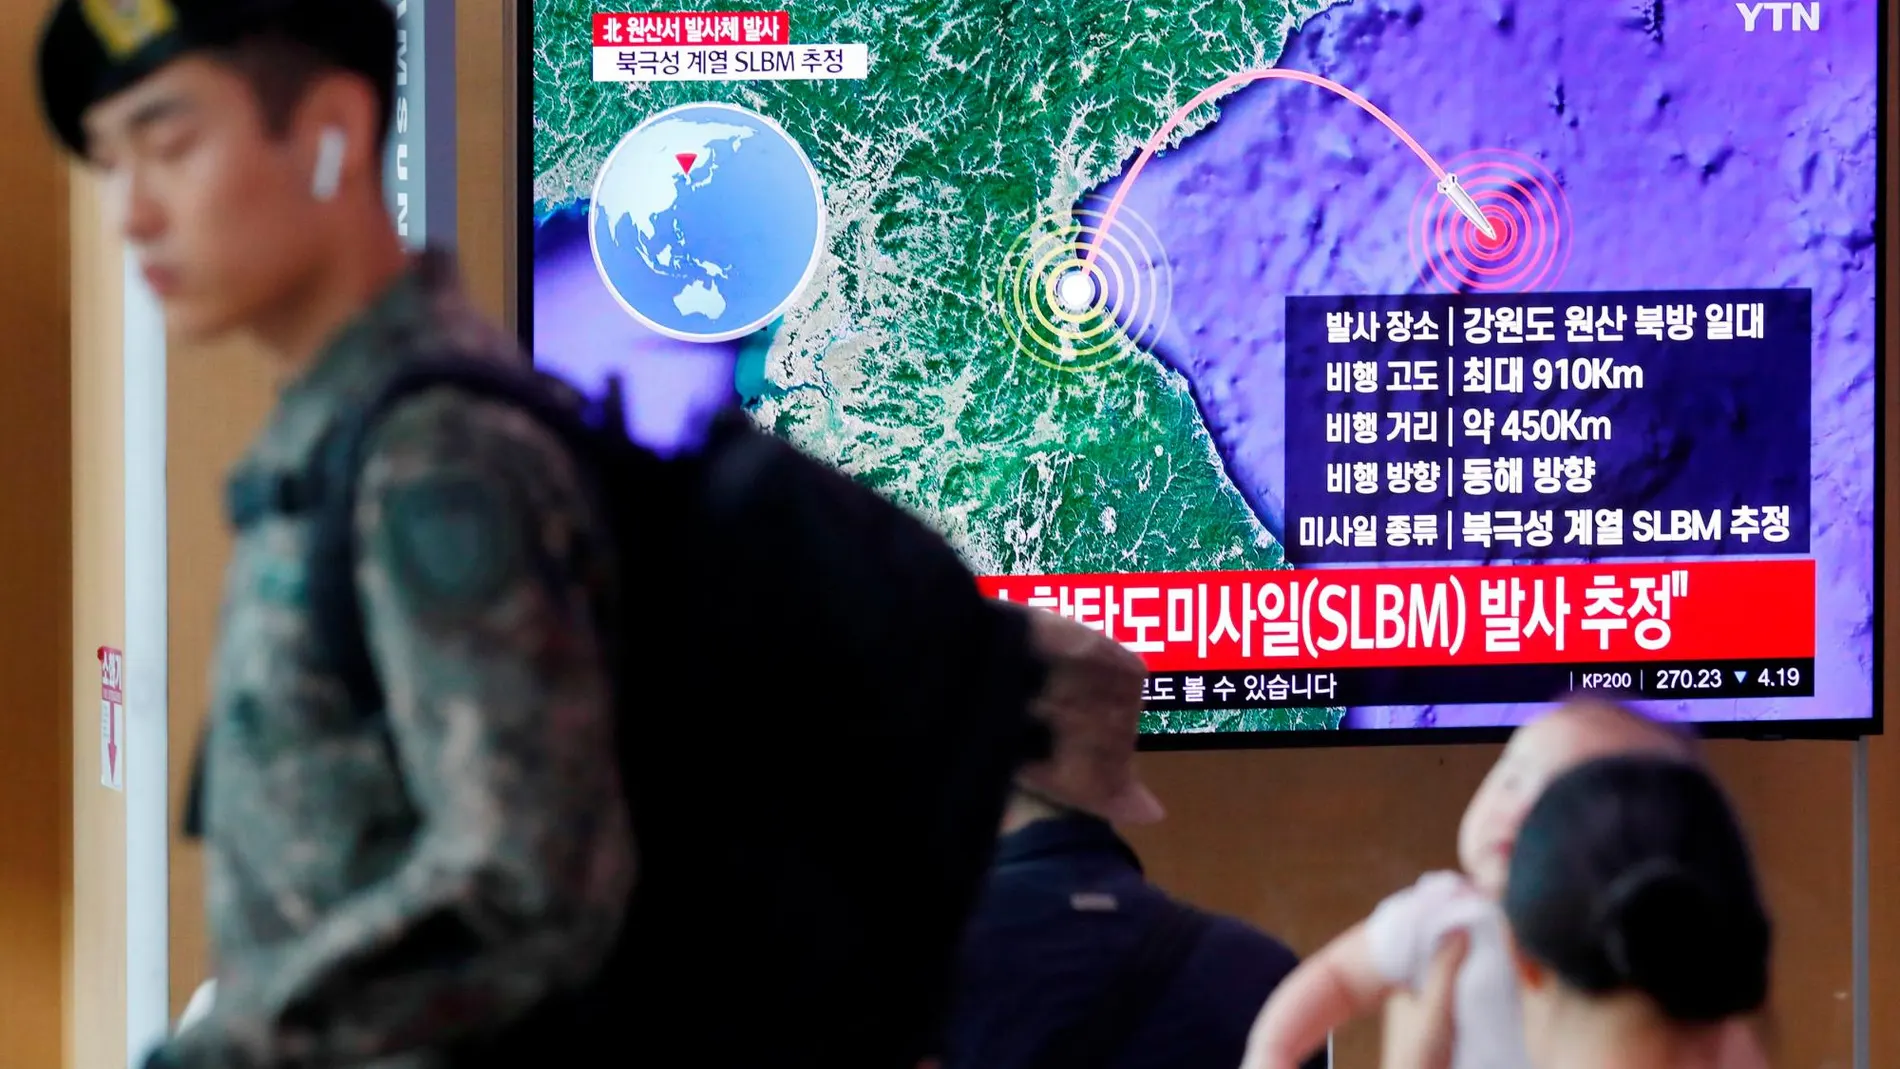 Un soldado surcoreano pasa frente a la noticia del misil norcoreano, en Seúl, Corea del Sur /REuters